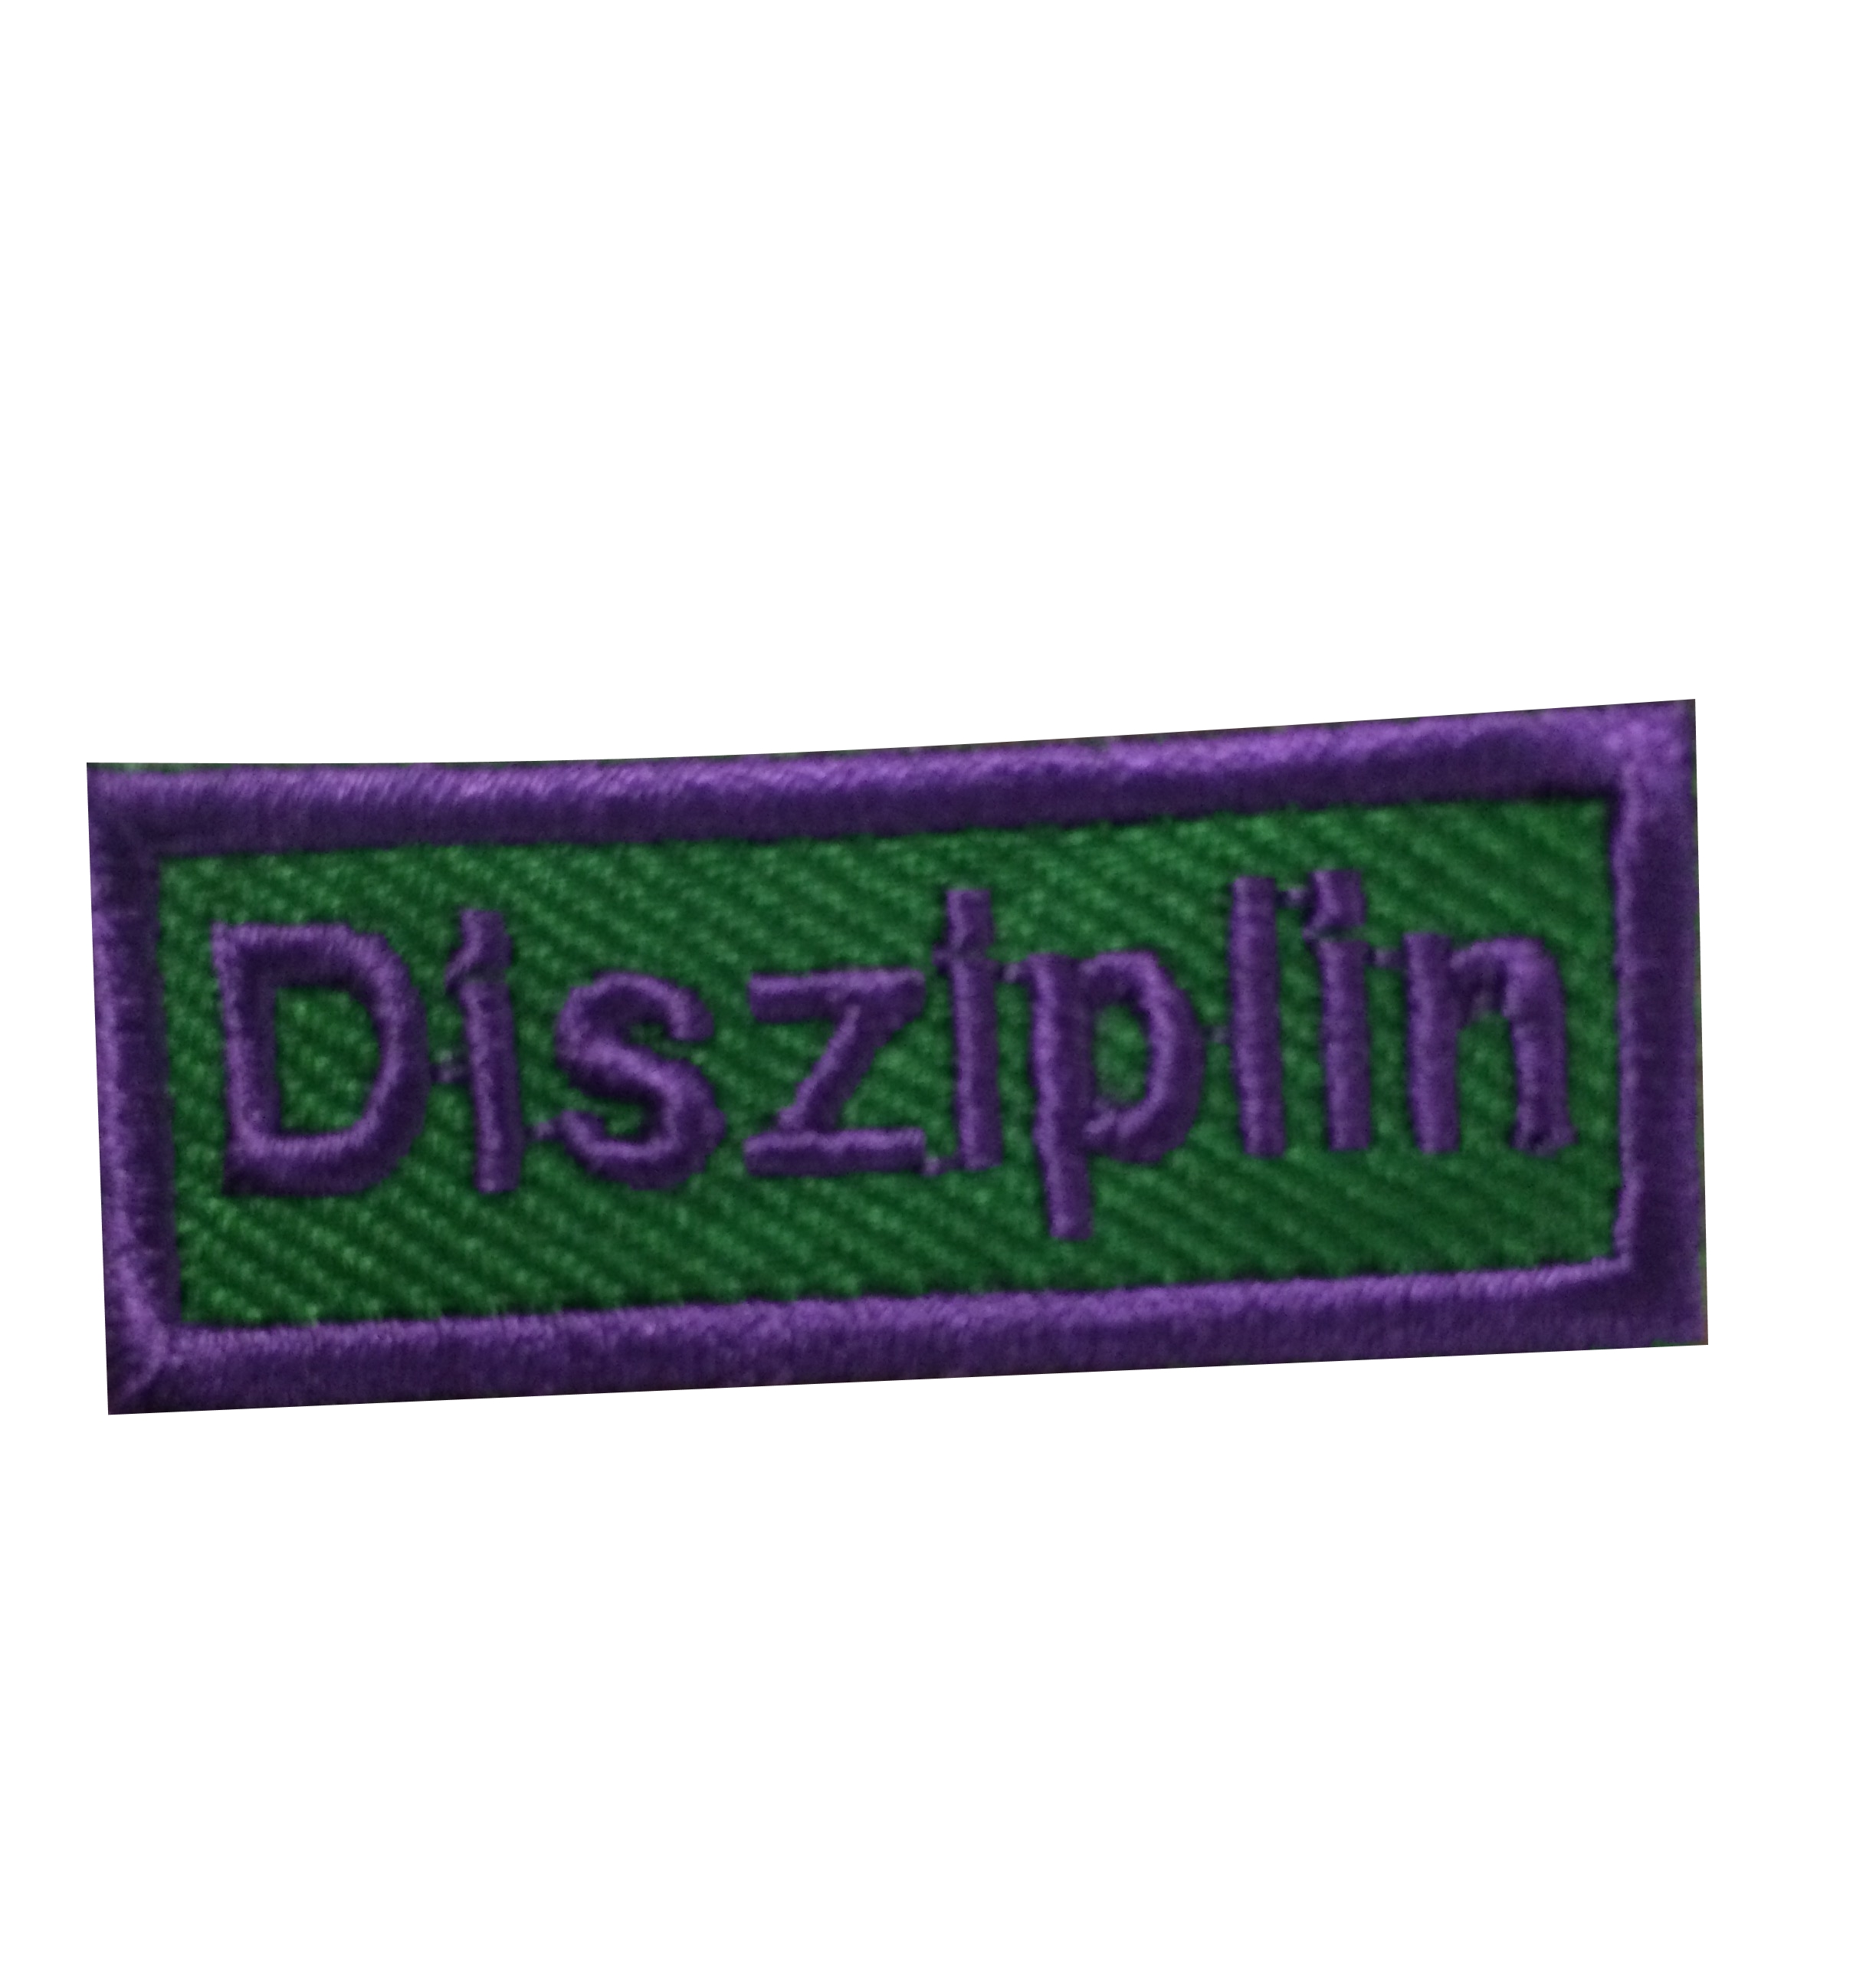 Disziplin - Anerkennungs-Abzeichen / Skill Patch violett/ grün